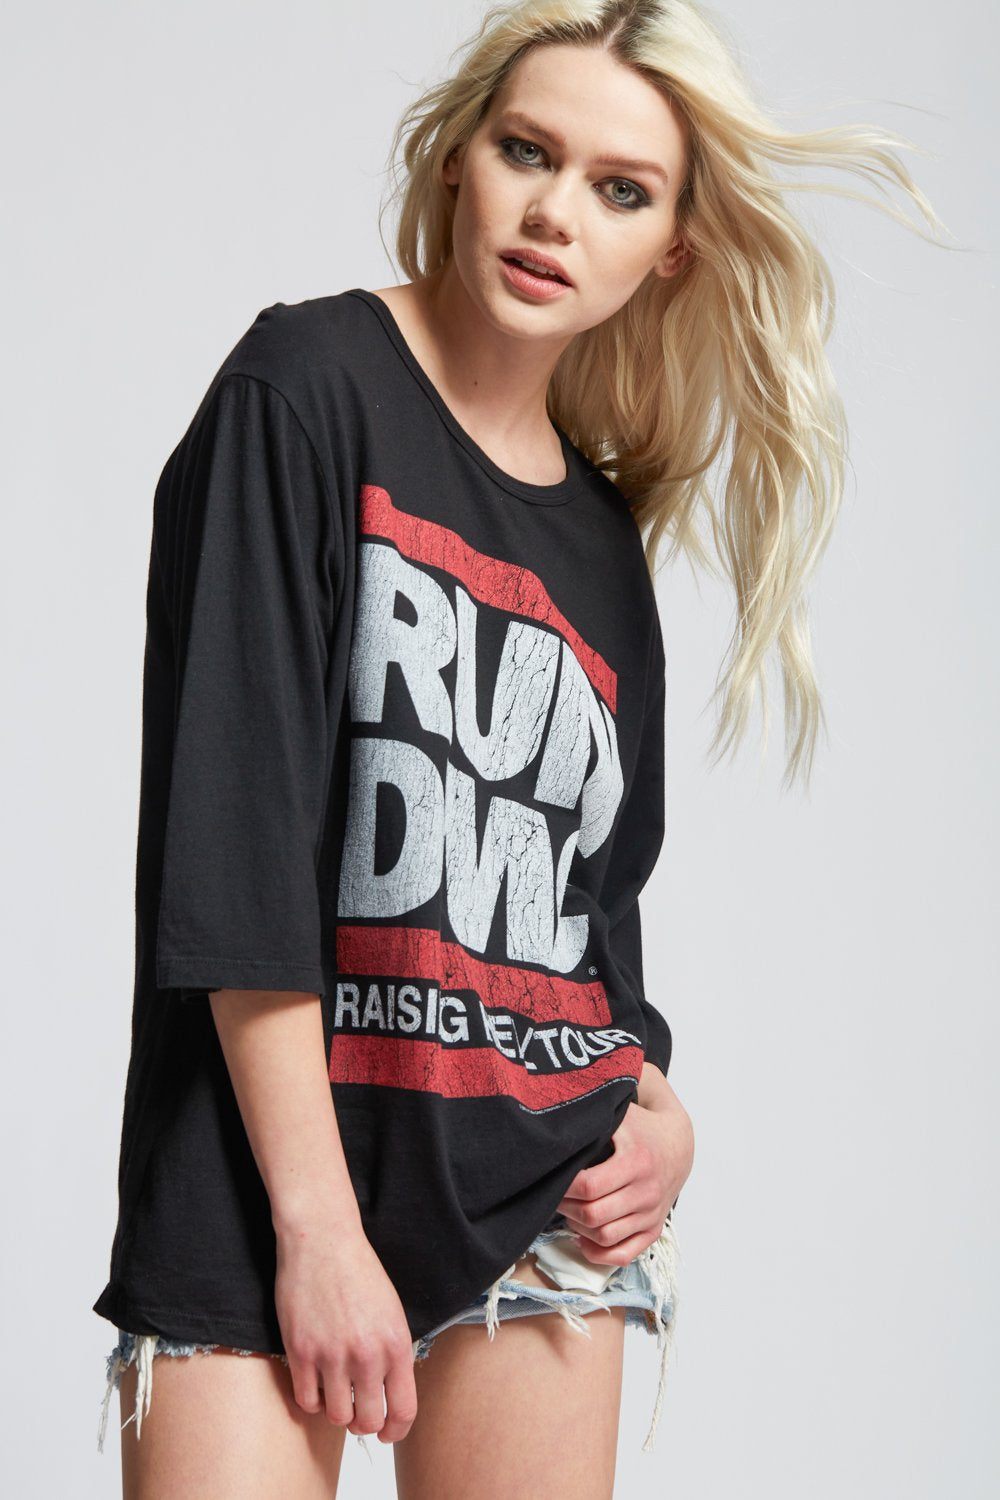 Run-DMC Raising Hell Tour Tee